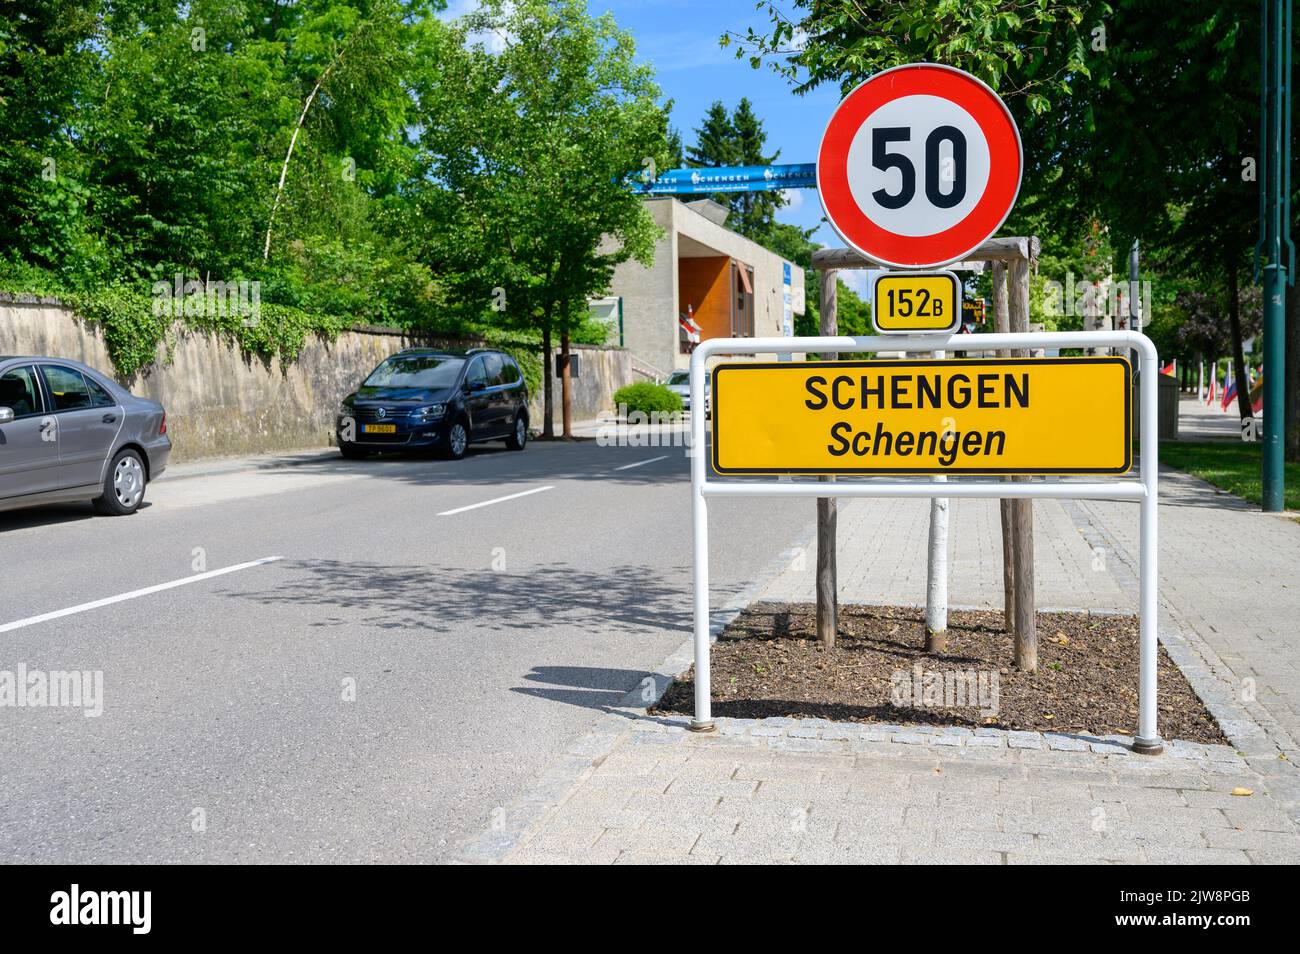 Schengen, Luxemburg, die Stadt, in der das berühmte Schengen-Abkommen am 14. Juni 1985 unterzeichnet wurde. Stockfoto